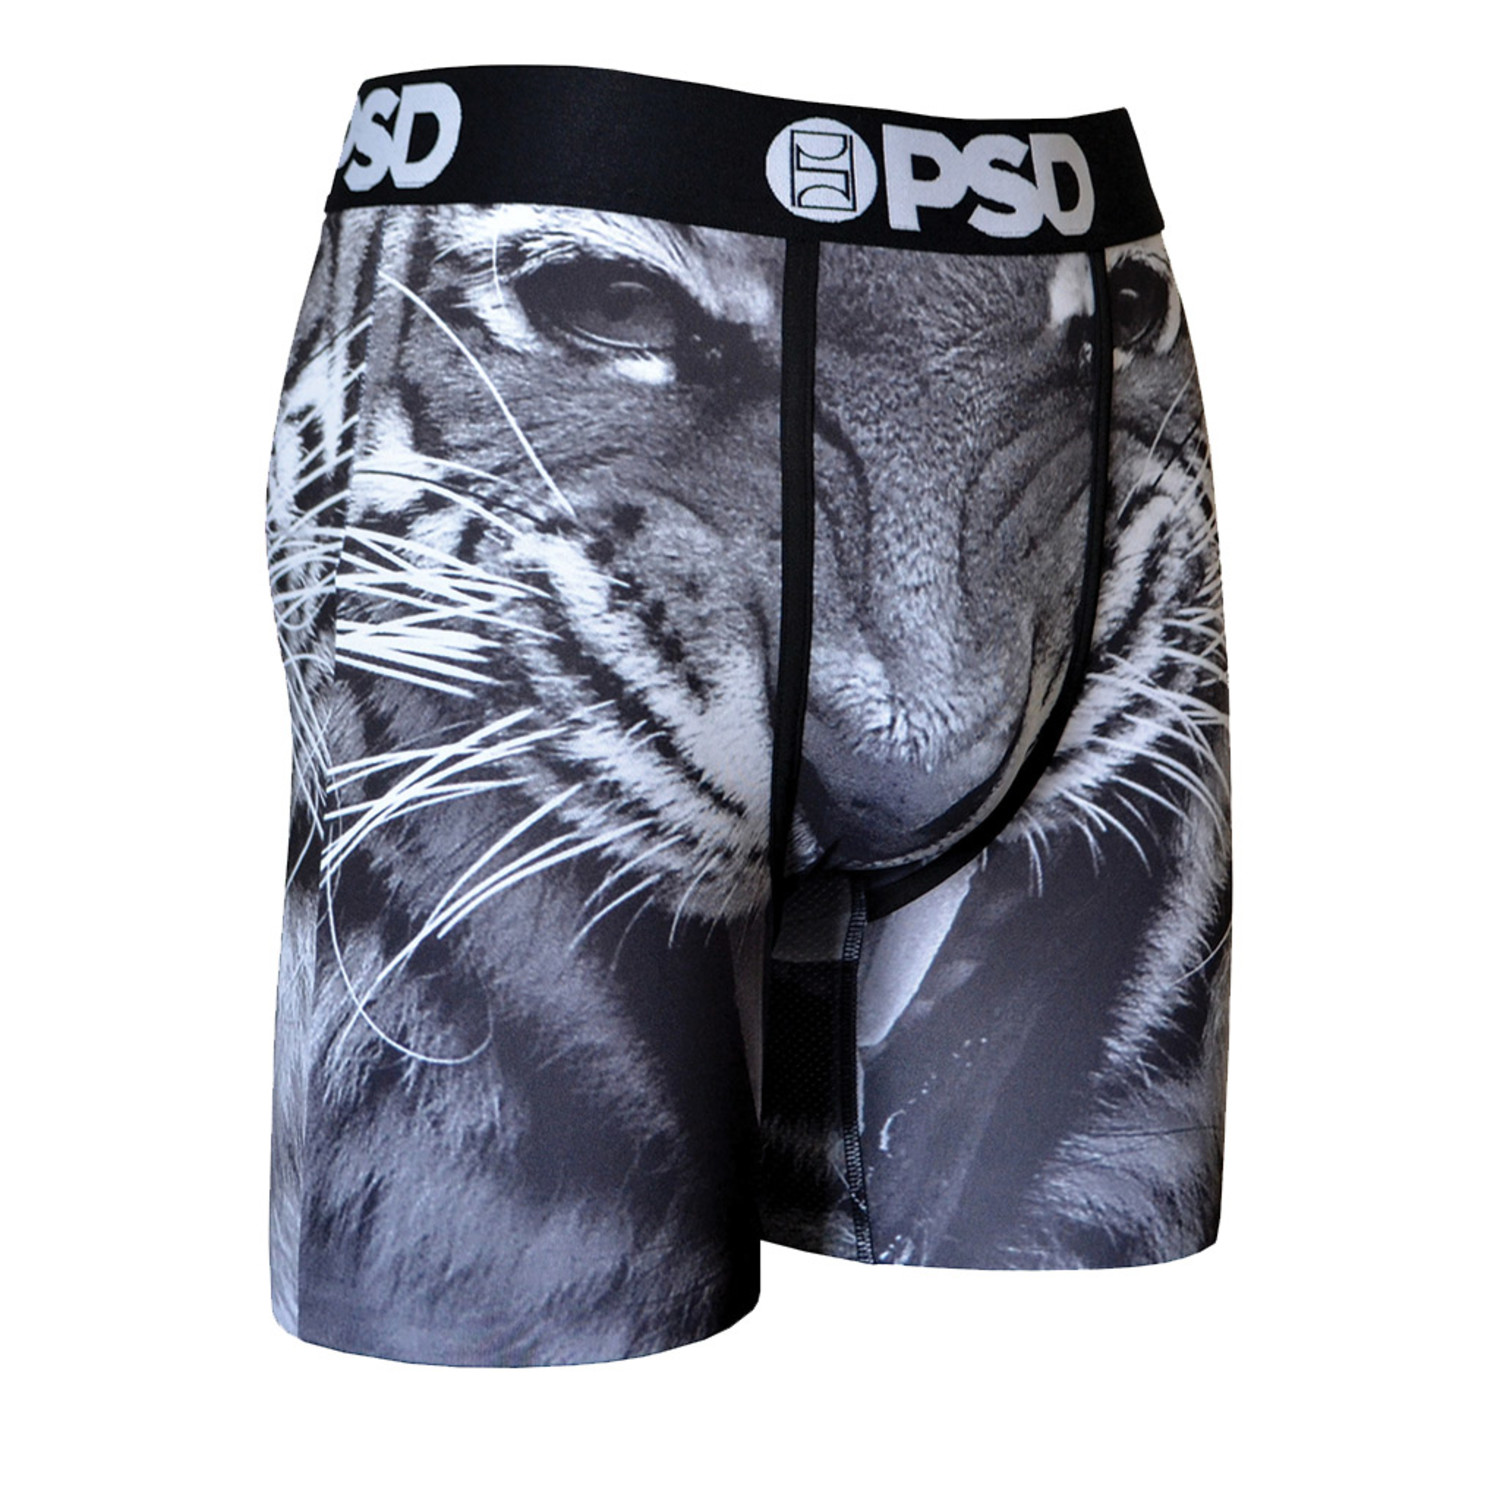 Tiger Underwear // Black (S) - PSD Underwear - Touch of Modern